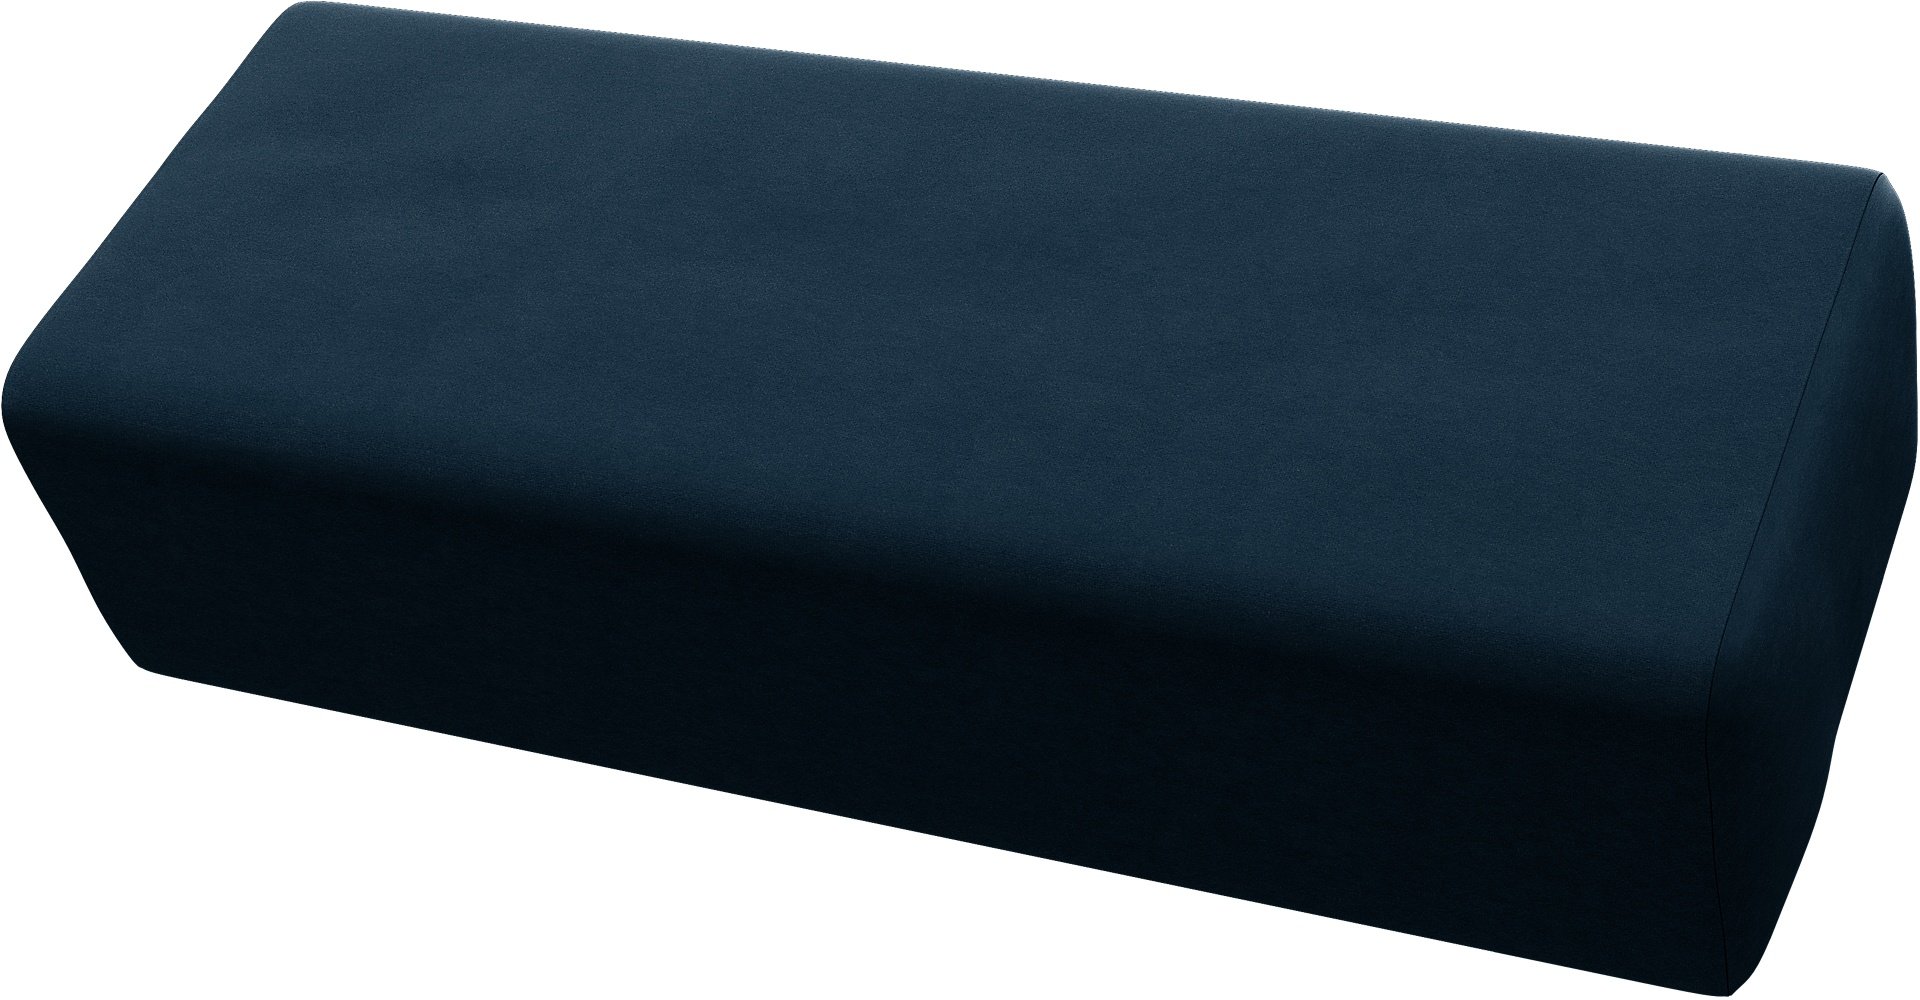 IKEA - Jattebo Headrest Cushion Cover, Midnight, Velvet - Bemz